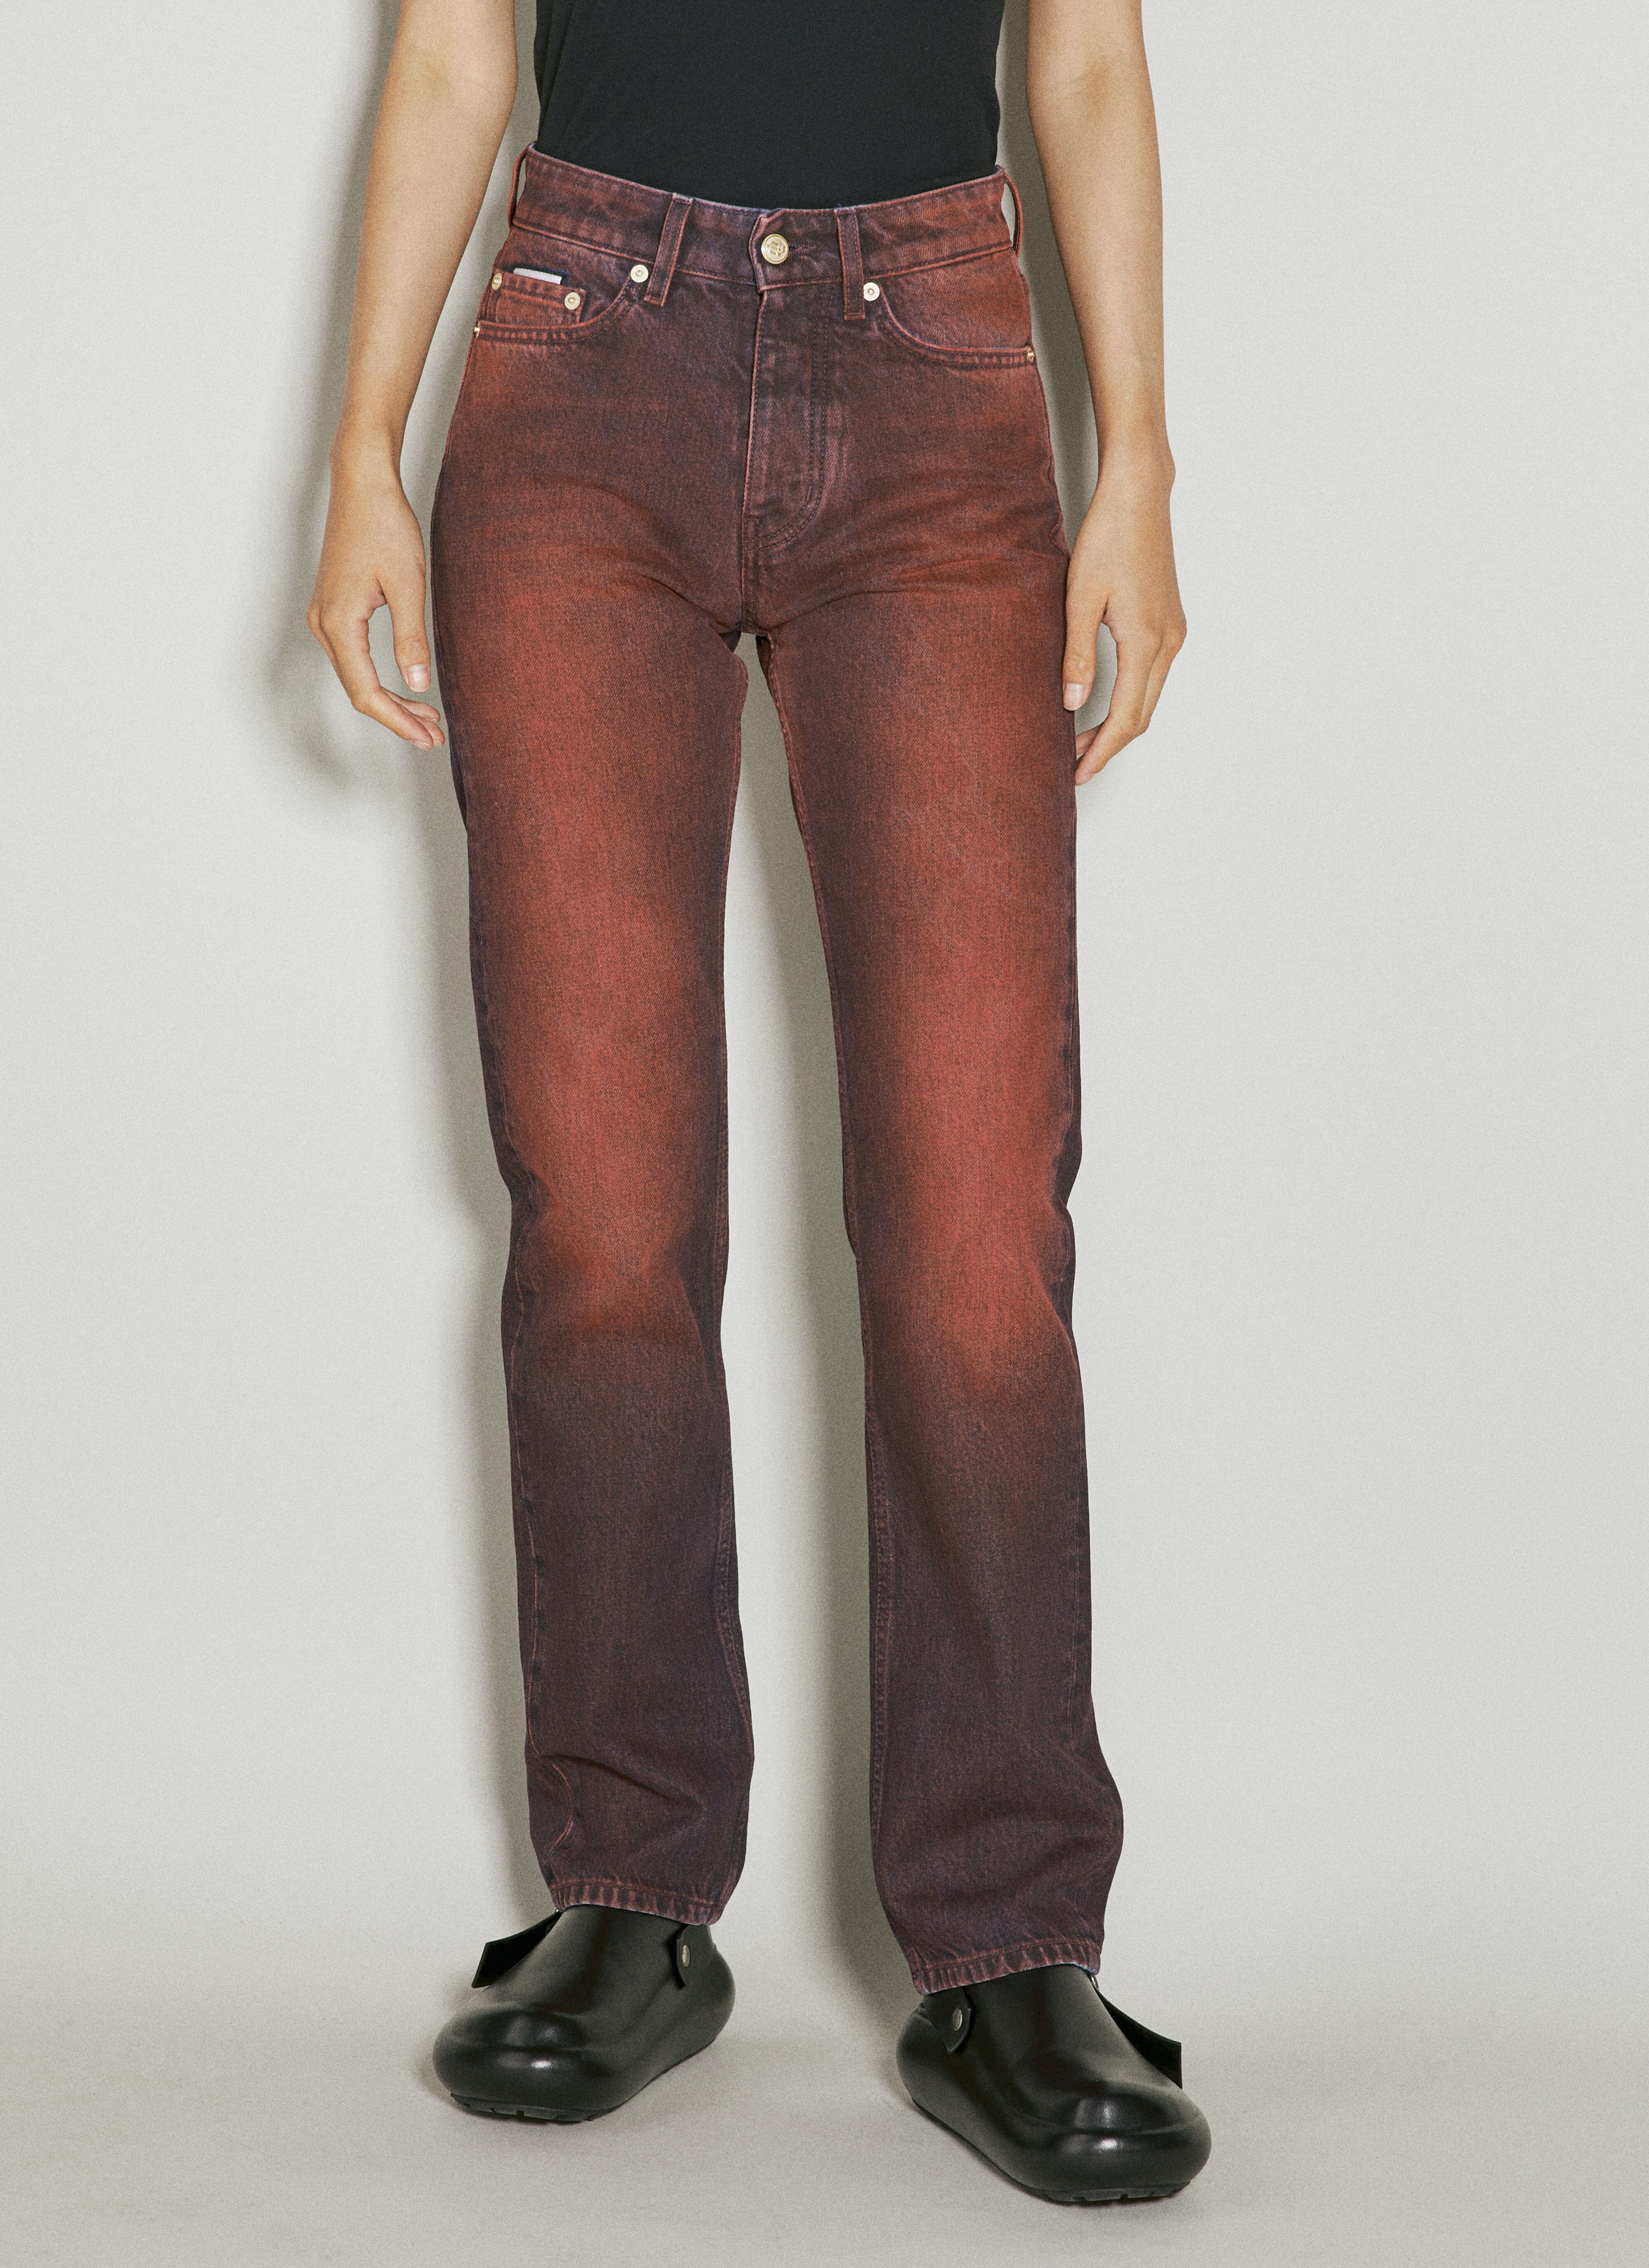 Blumarine Orion Ombre Jeans 핑크 blm0252039